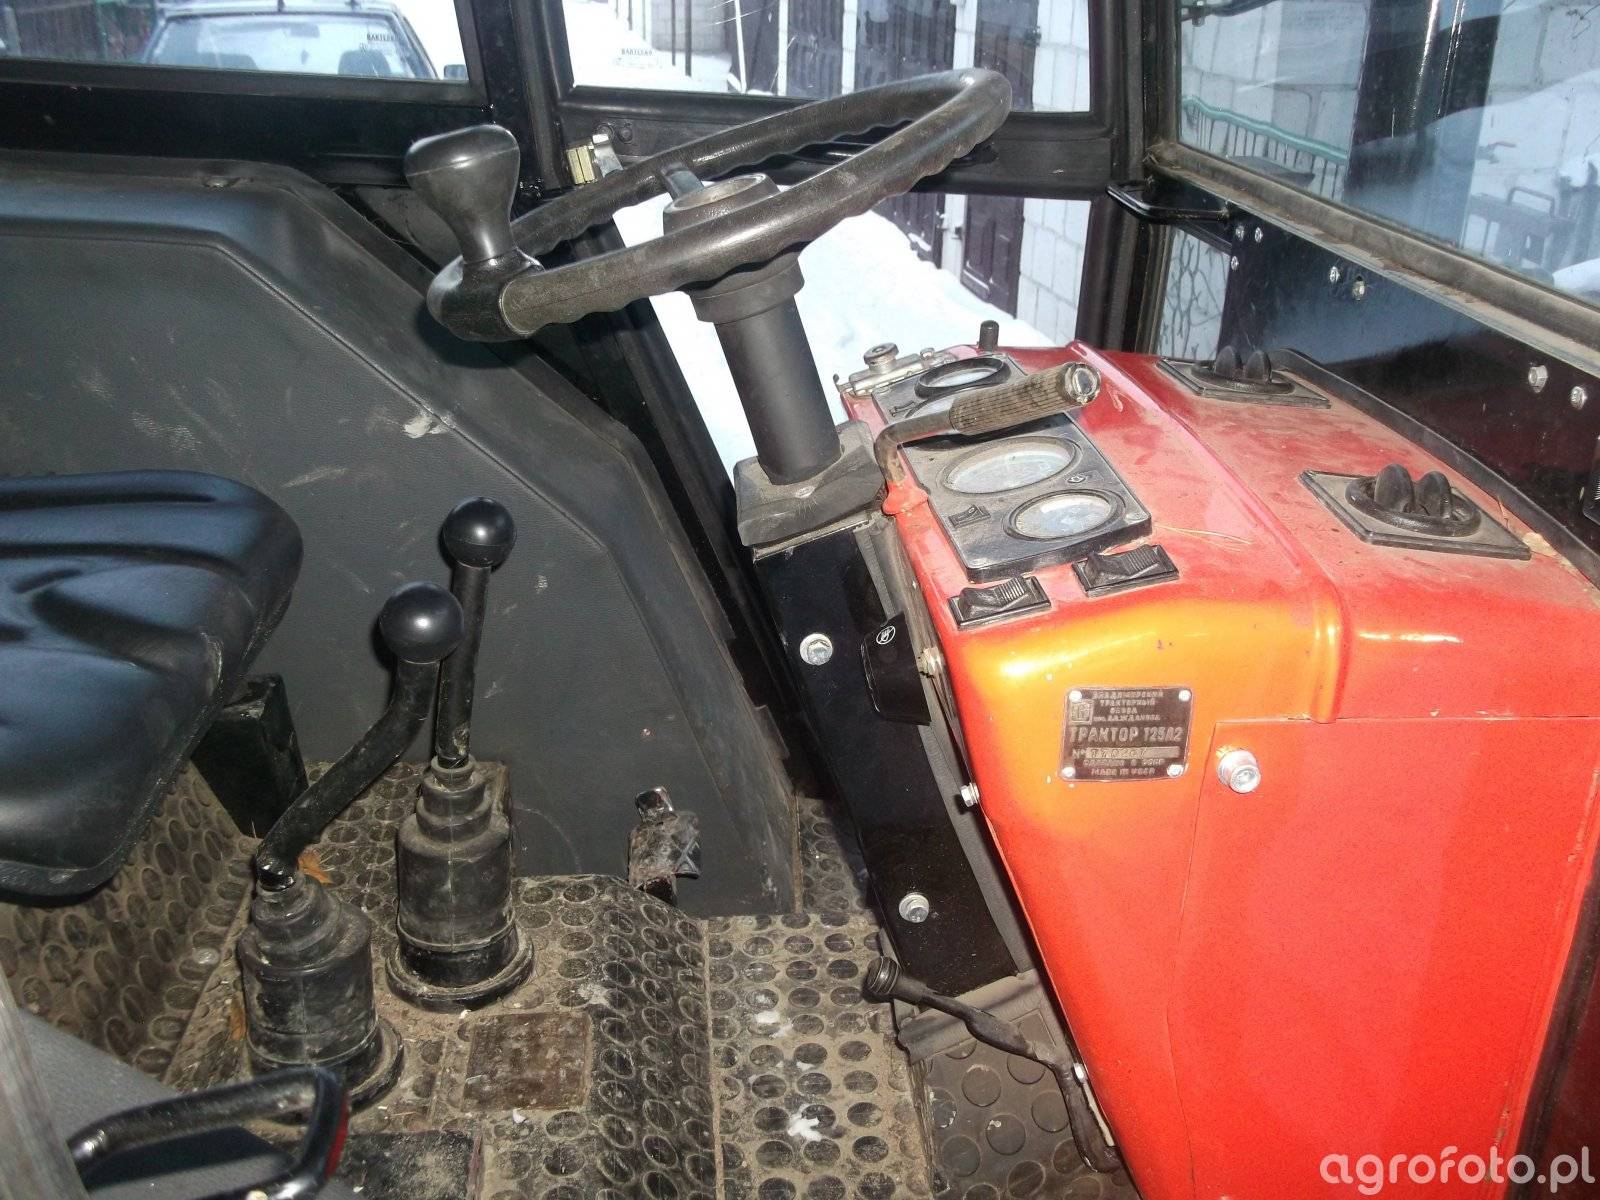 Руководство по самостоятельному ремонту рабочих узлов трактора т-25